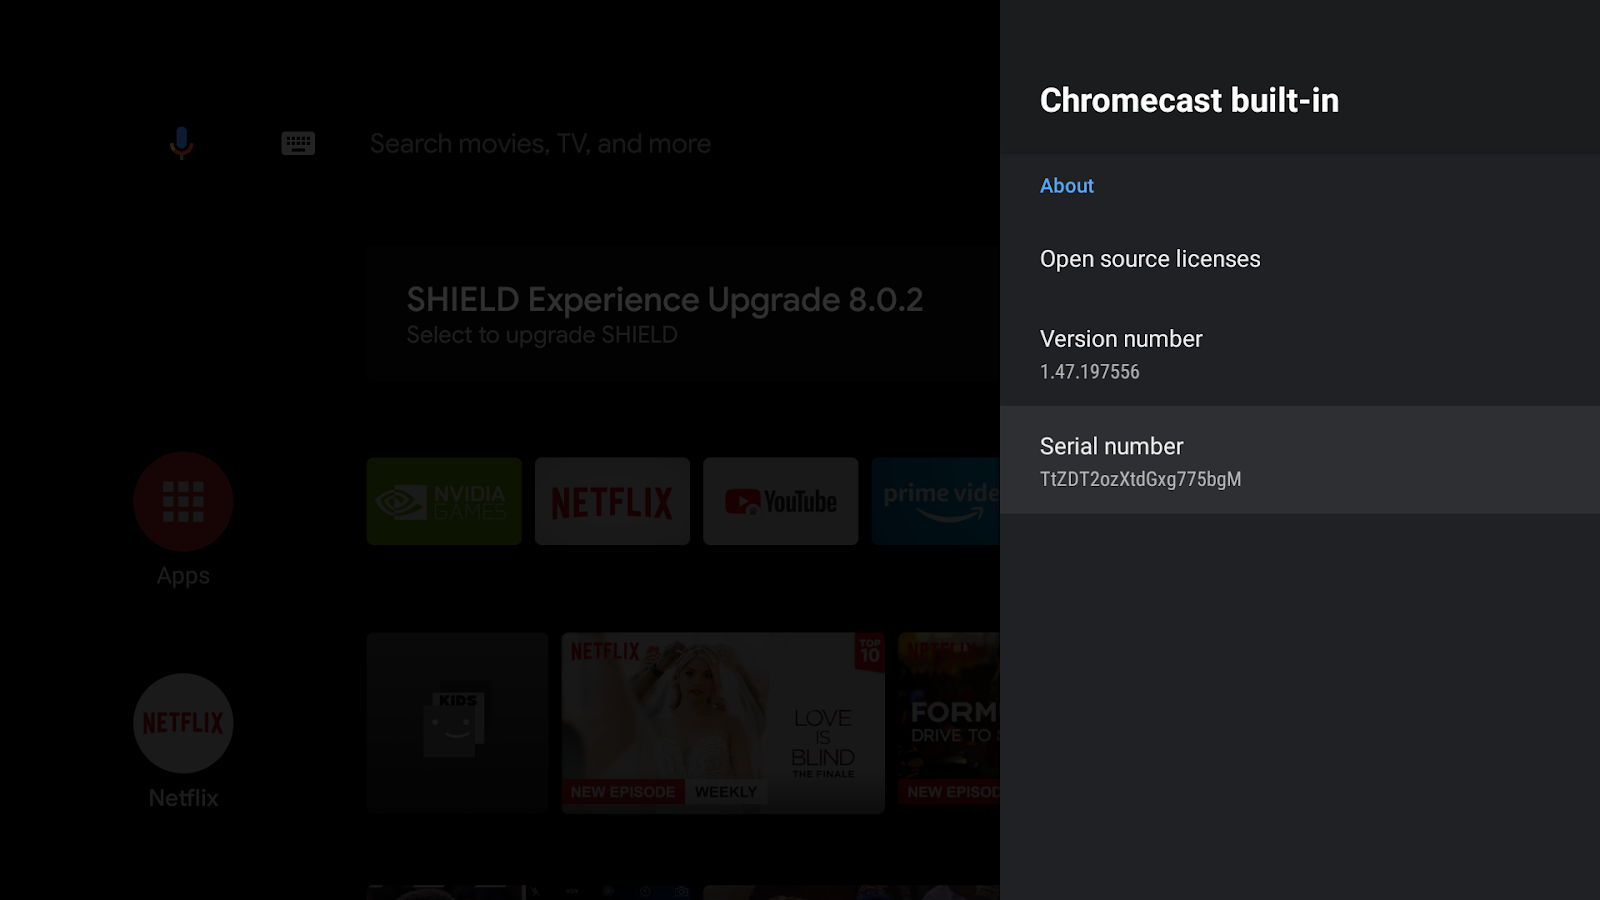 顯示 Android TV 螢幕的圖片，其中顯示「&#39; 內建 Chromecast&#39;」畫面、版本號碼和序號